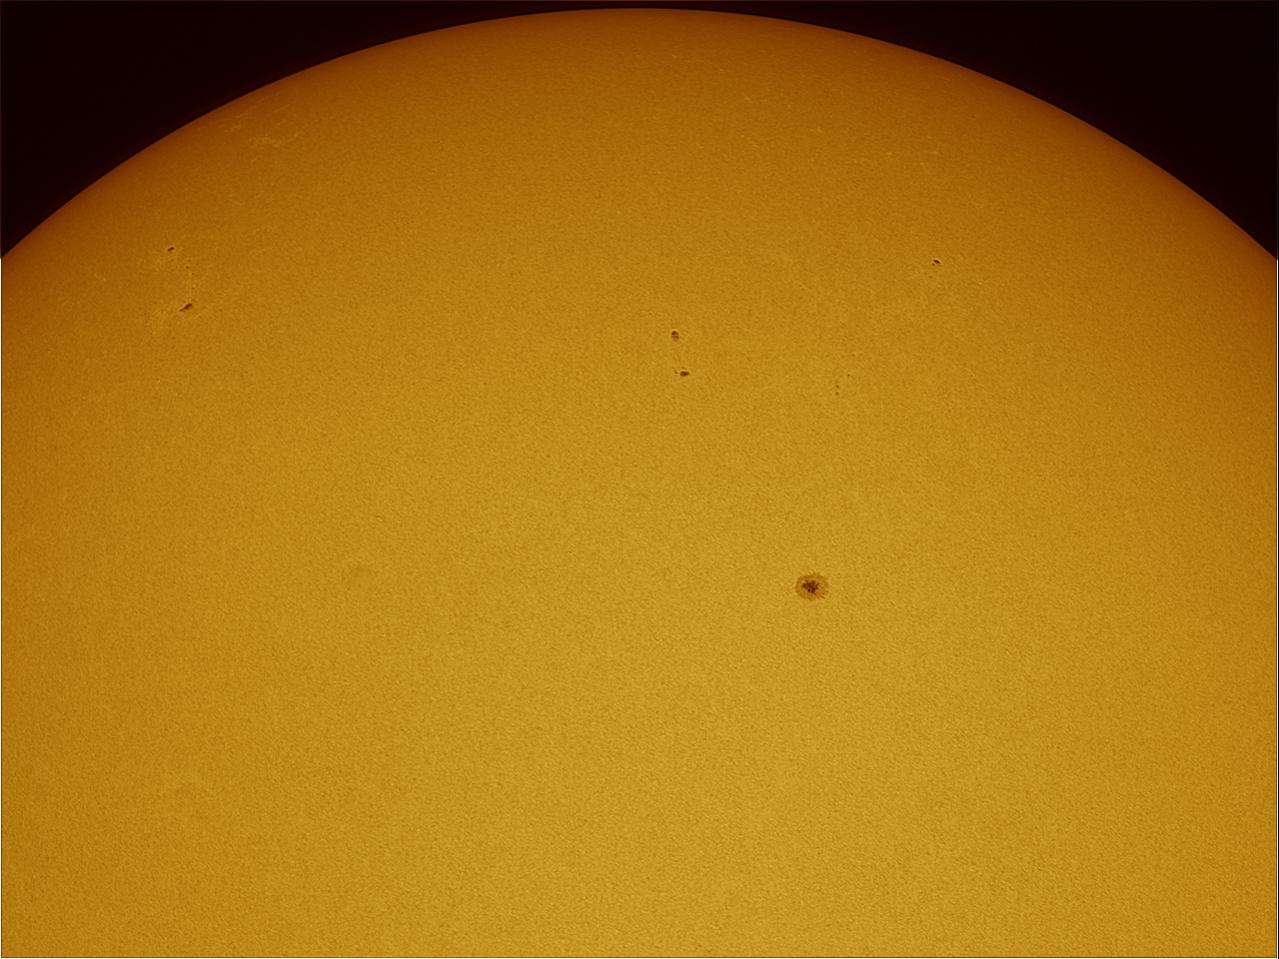 La surface solaire et ses taches photographiées le 15 juillet 2011. © A. Itic